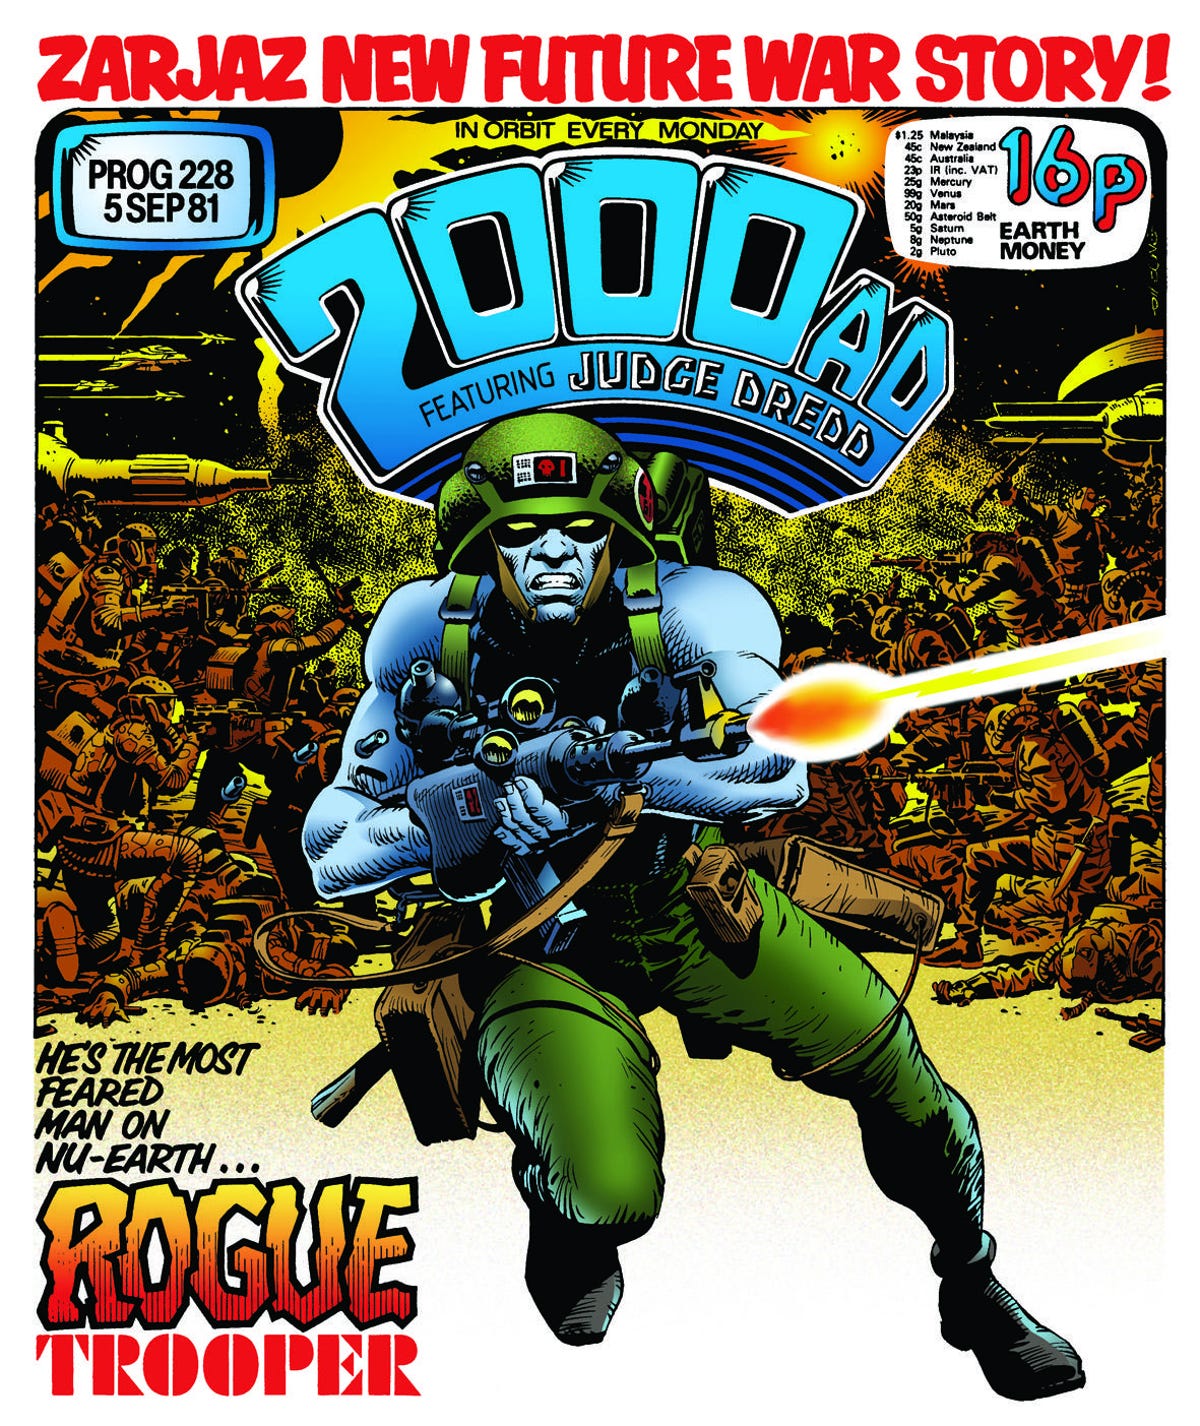 rogue-trooper-2000ad-1